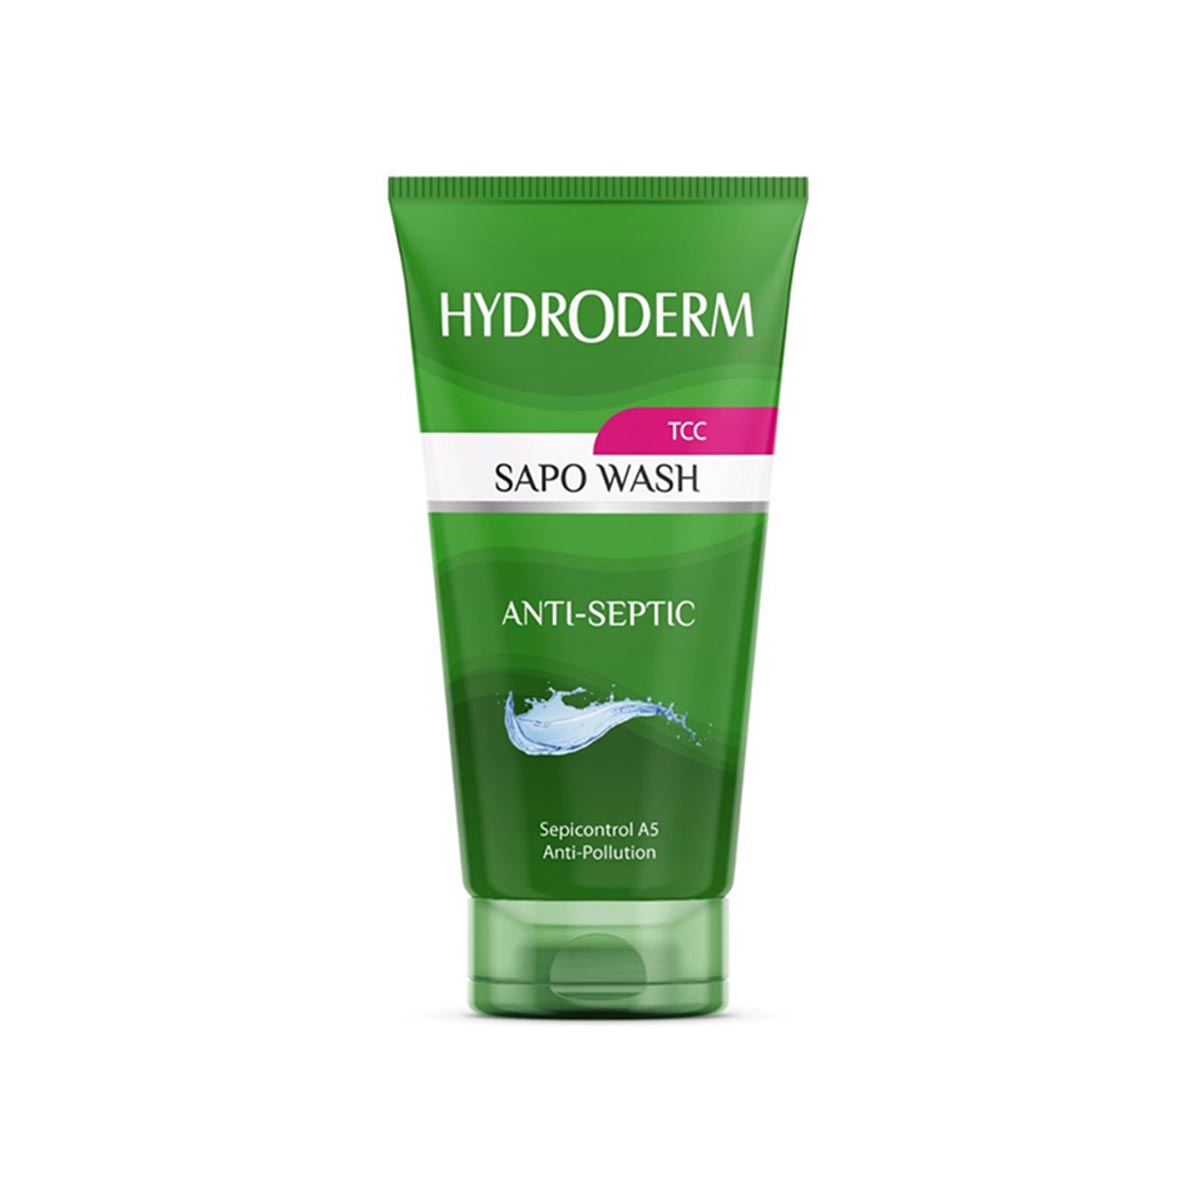  مایع شوینده صابونی پوست های چرب و جوش دار حاوی تری کلوکربان هیدرودرم Hydroderm حجم 150 میلی لیتر